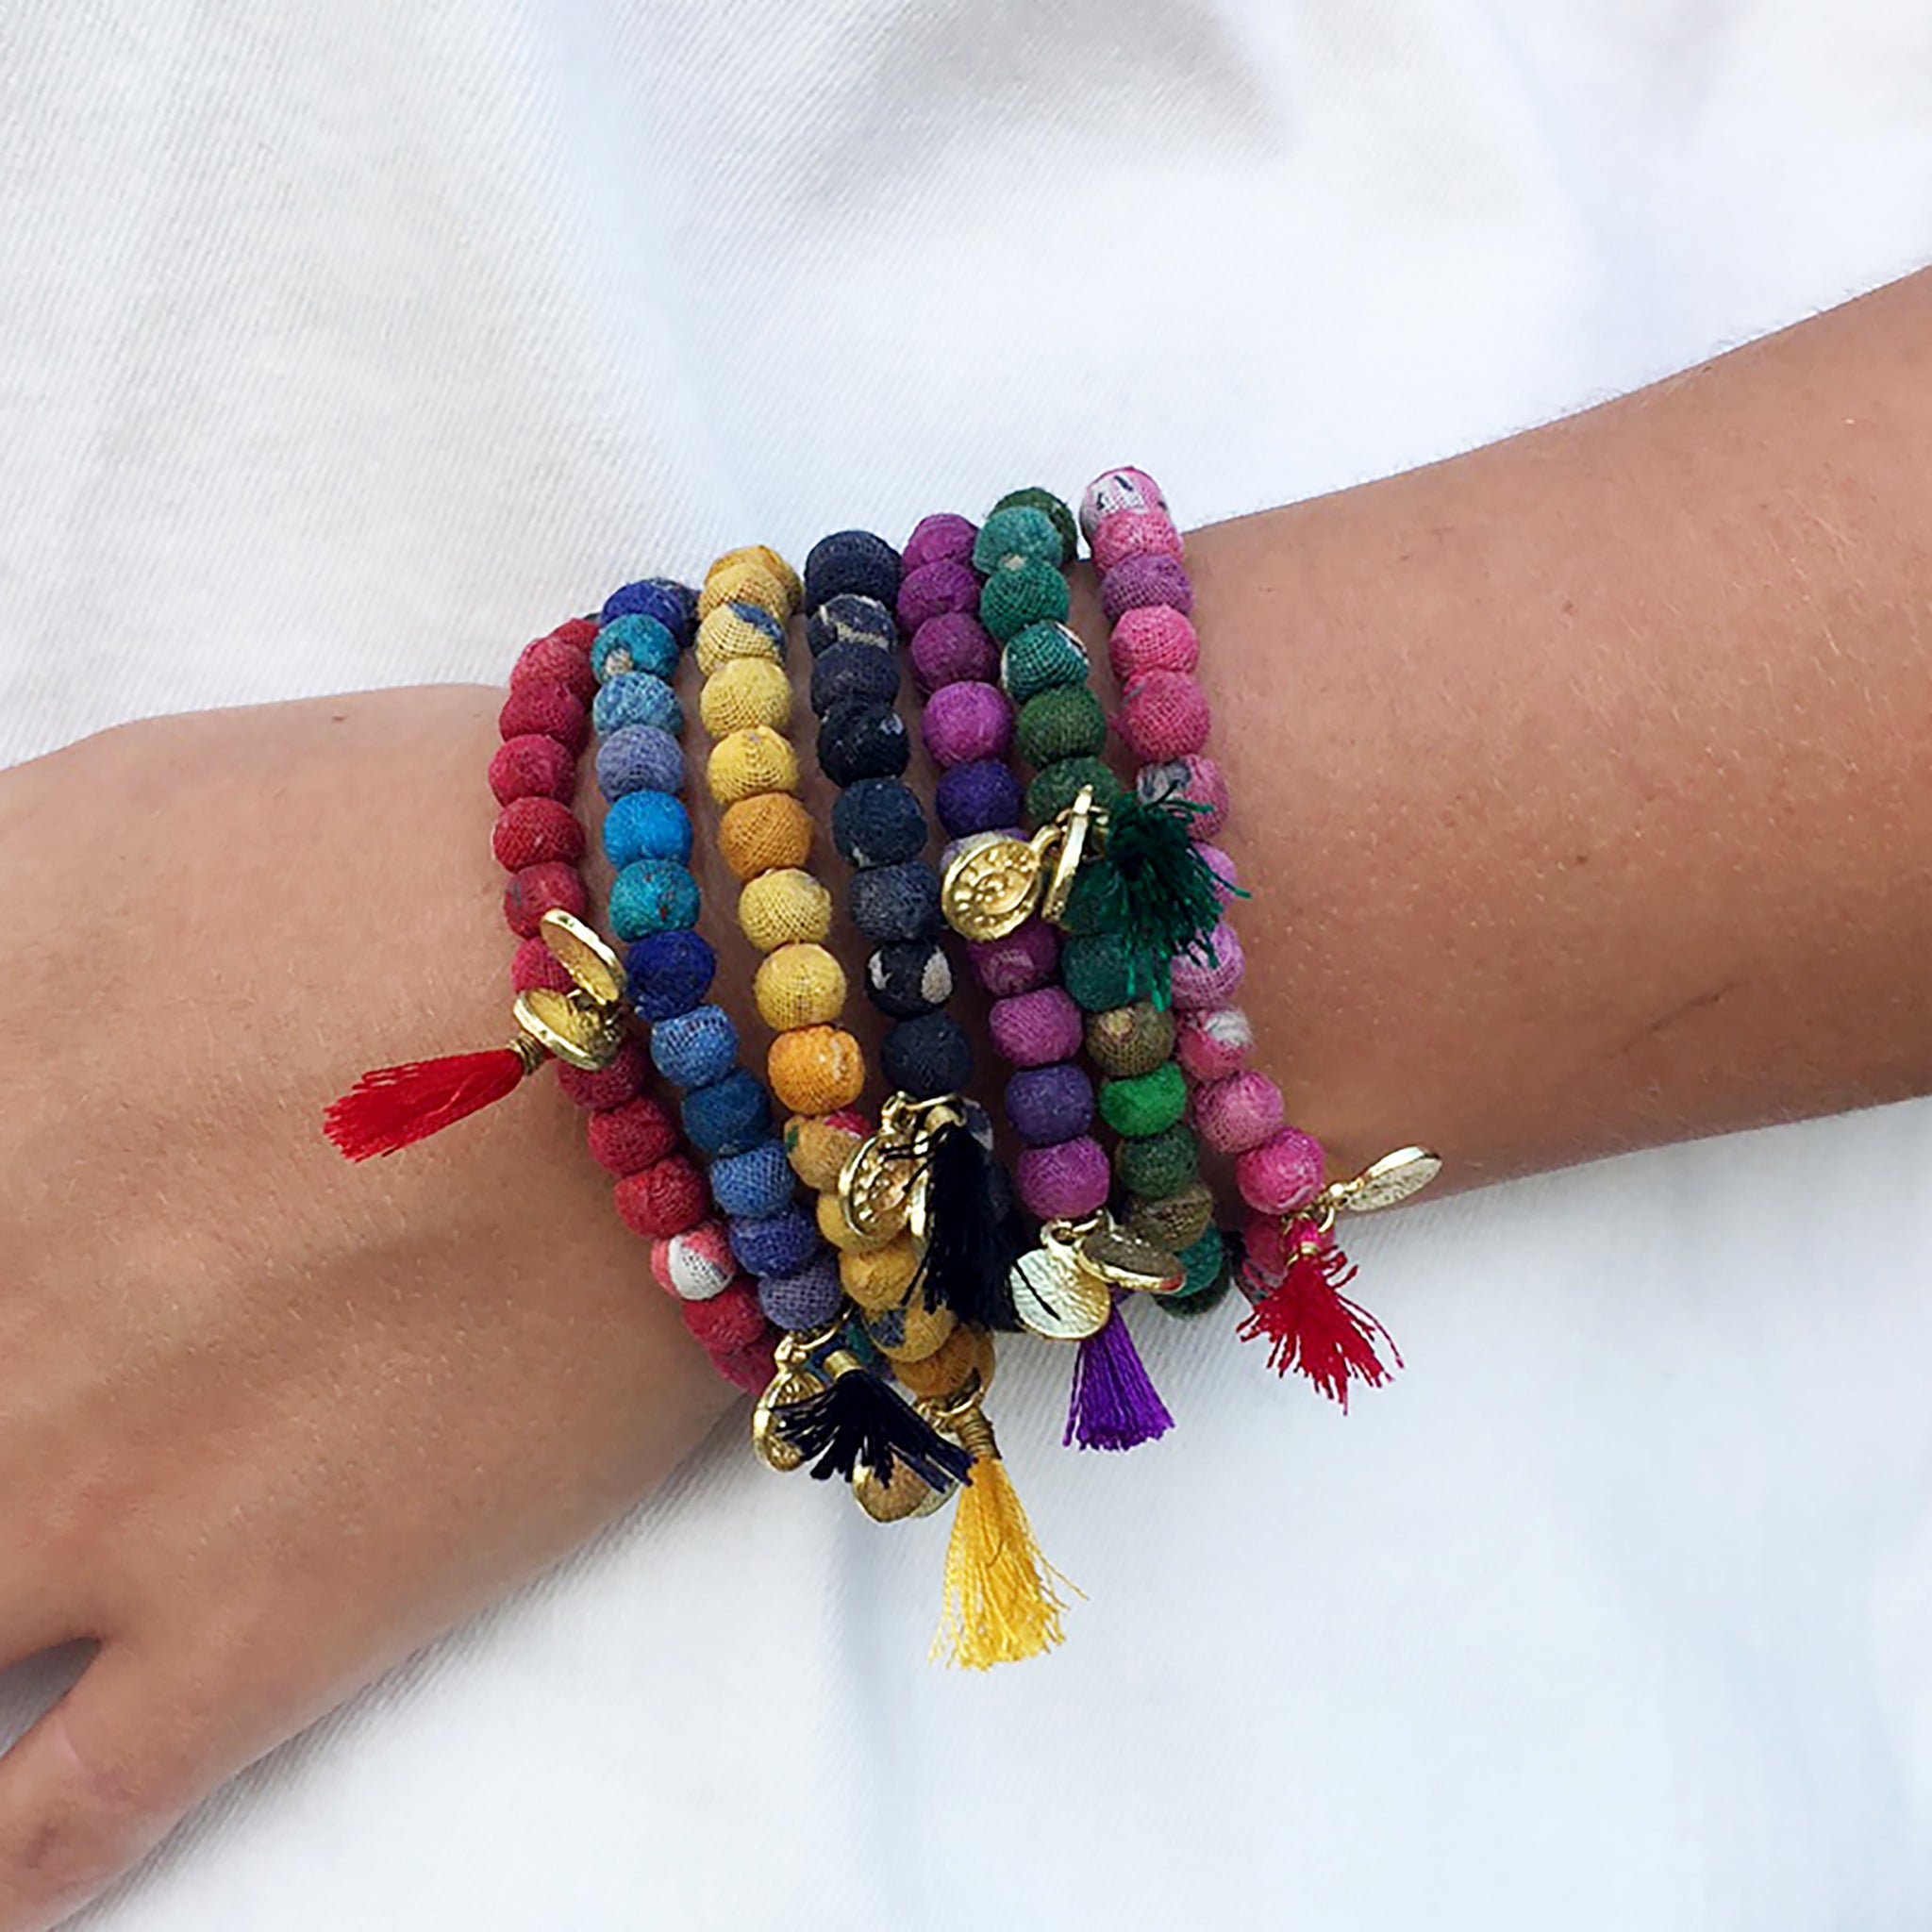 Seven bracelets adorn a wrist, each of a different color.